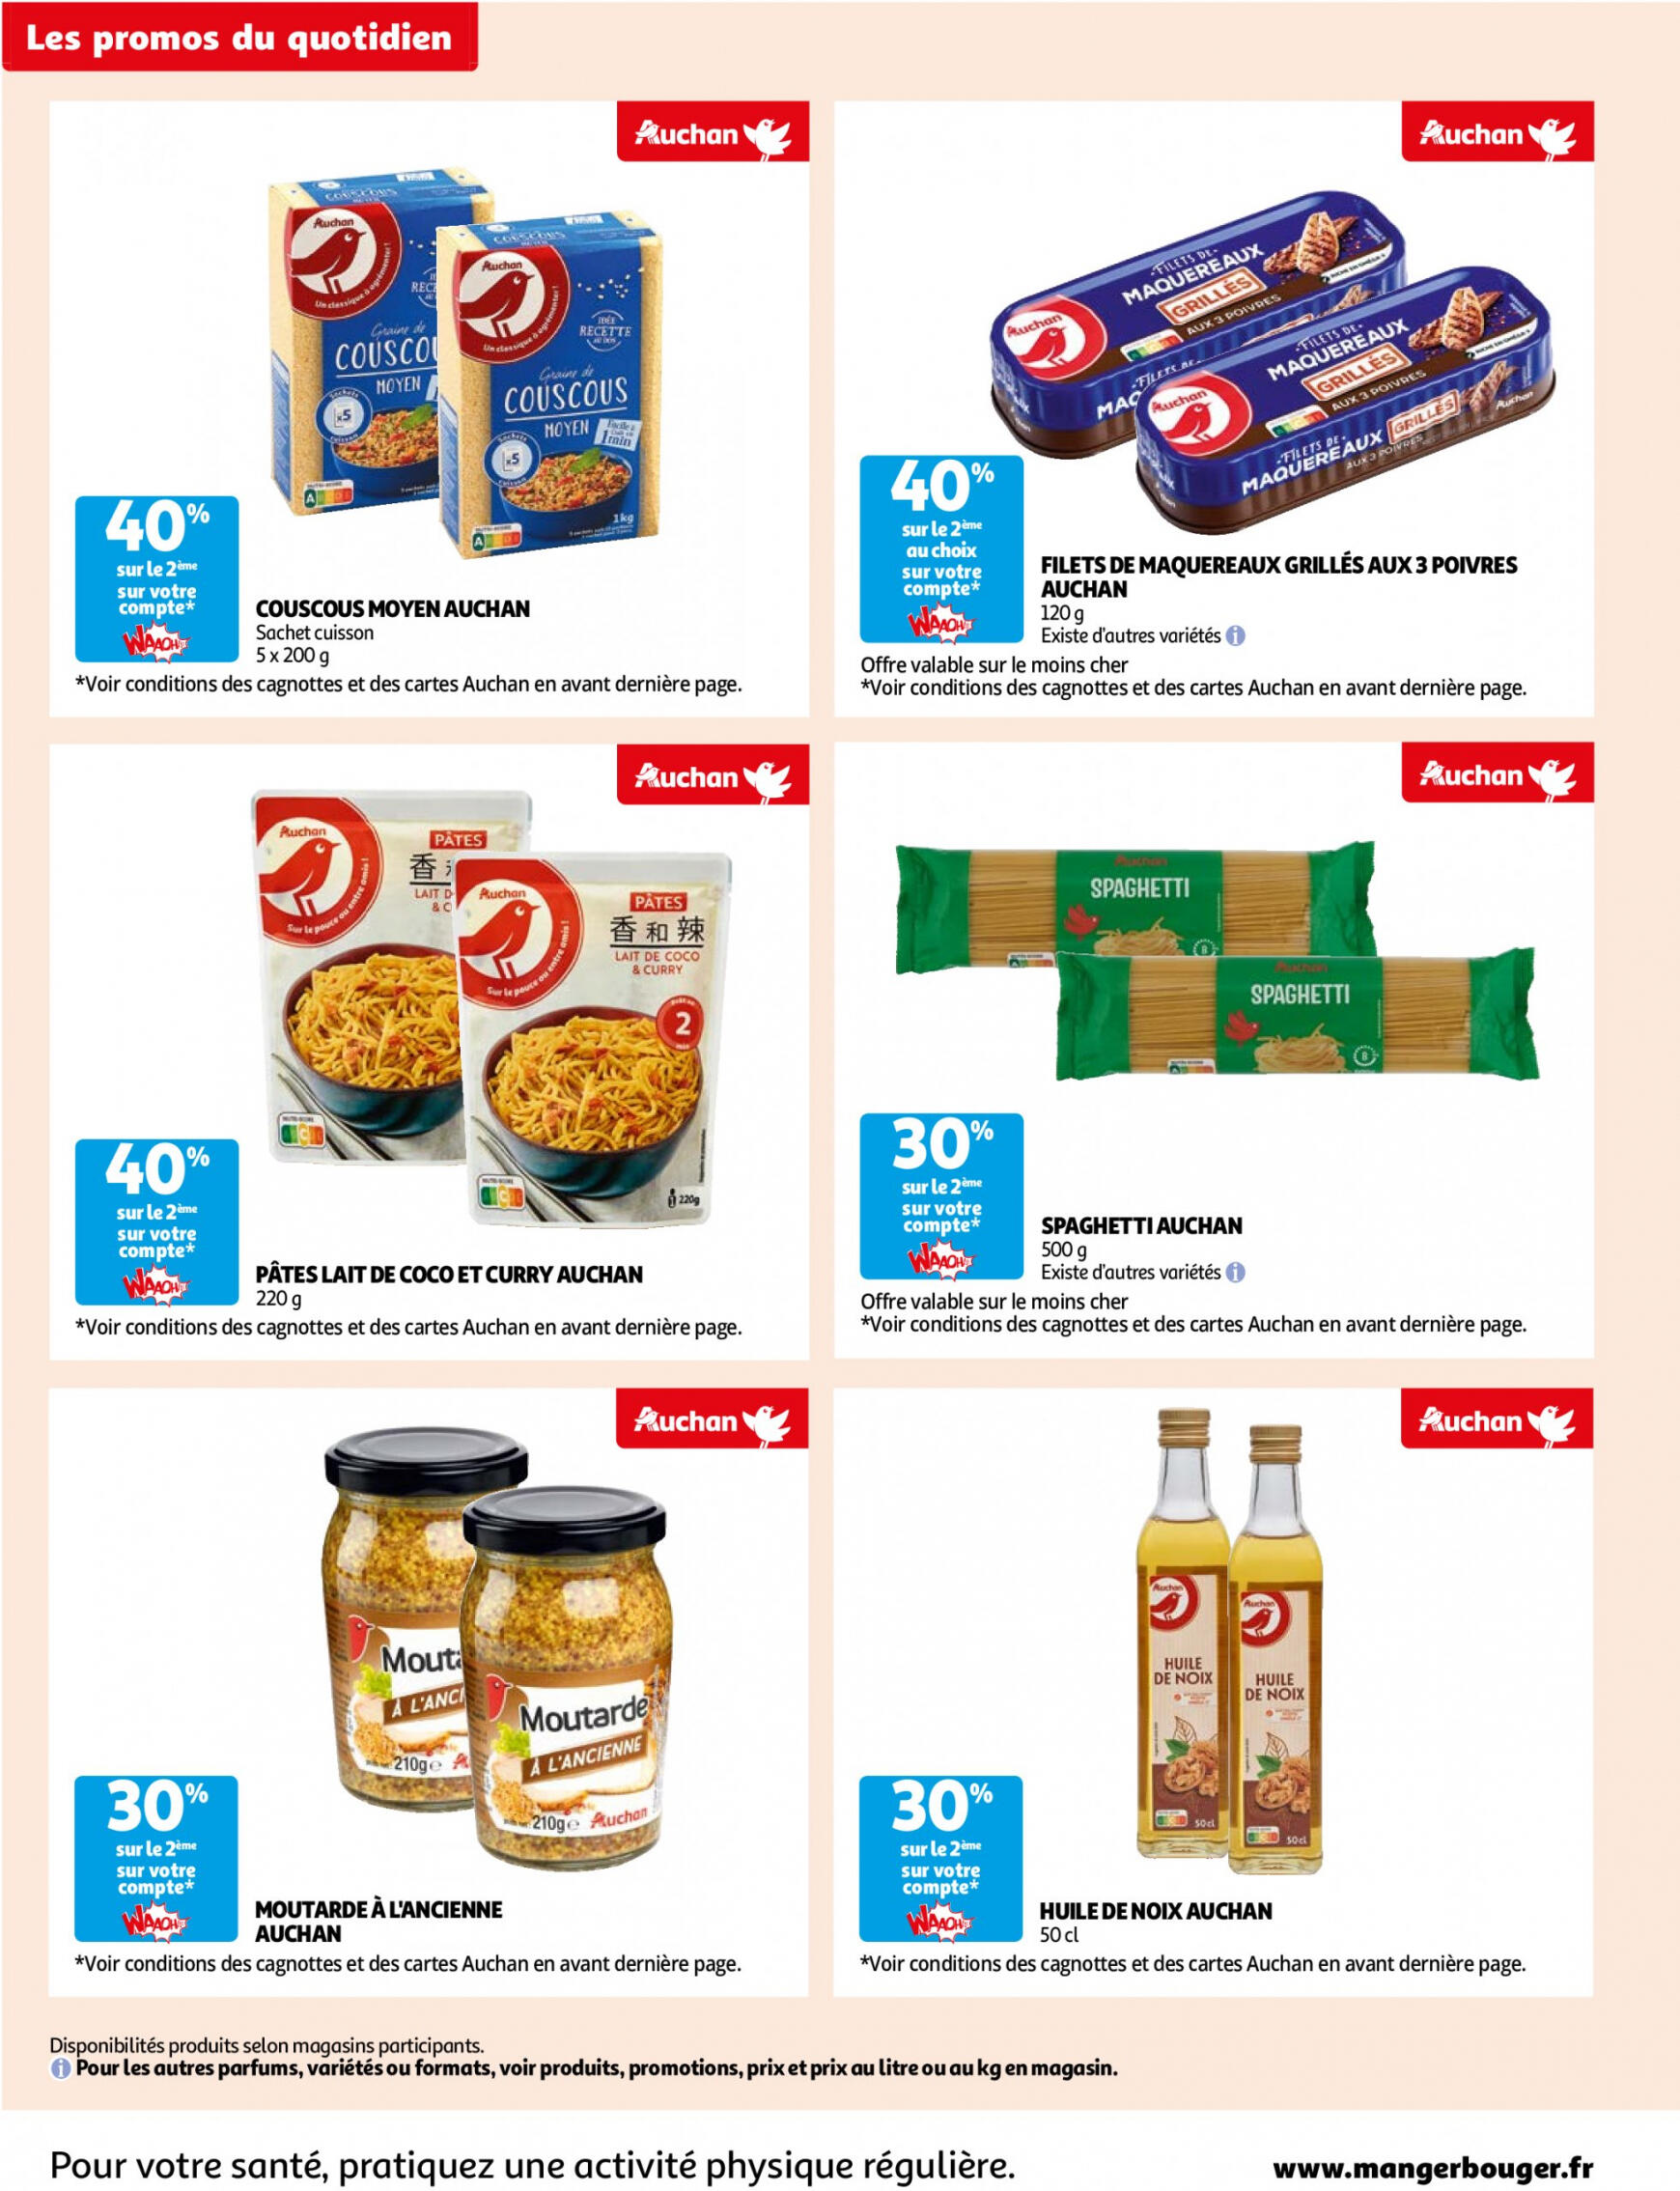 auchan - Auchan - Des économies au quotidien folder huidig 14.05. - 03.06. - page: 8